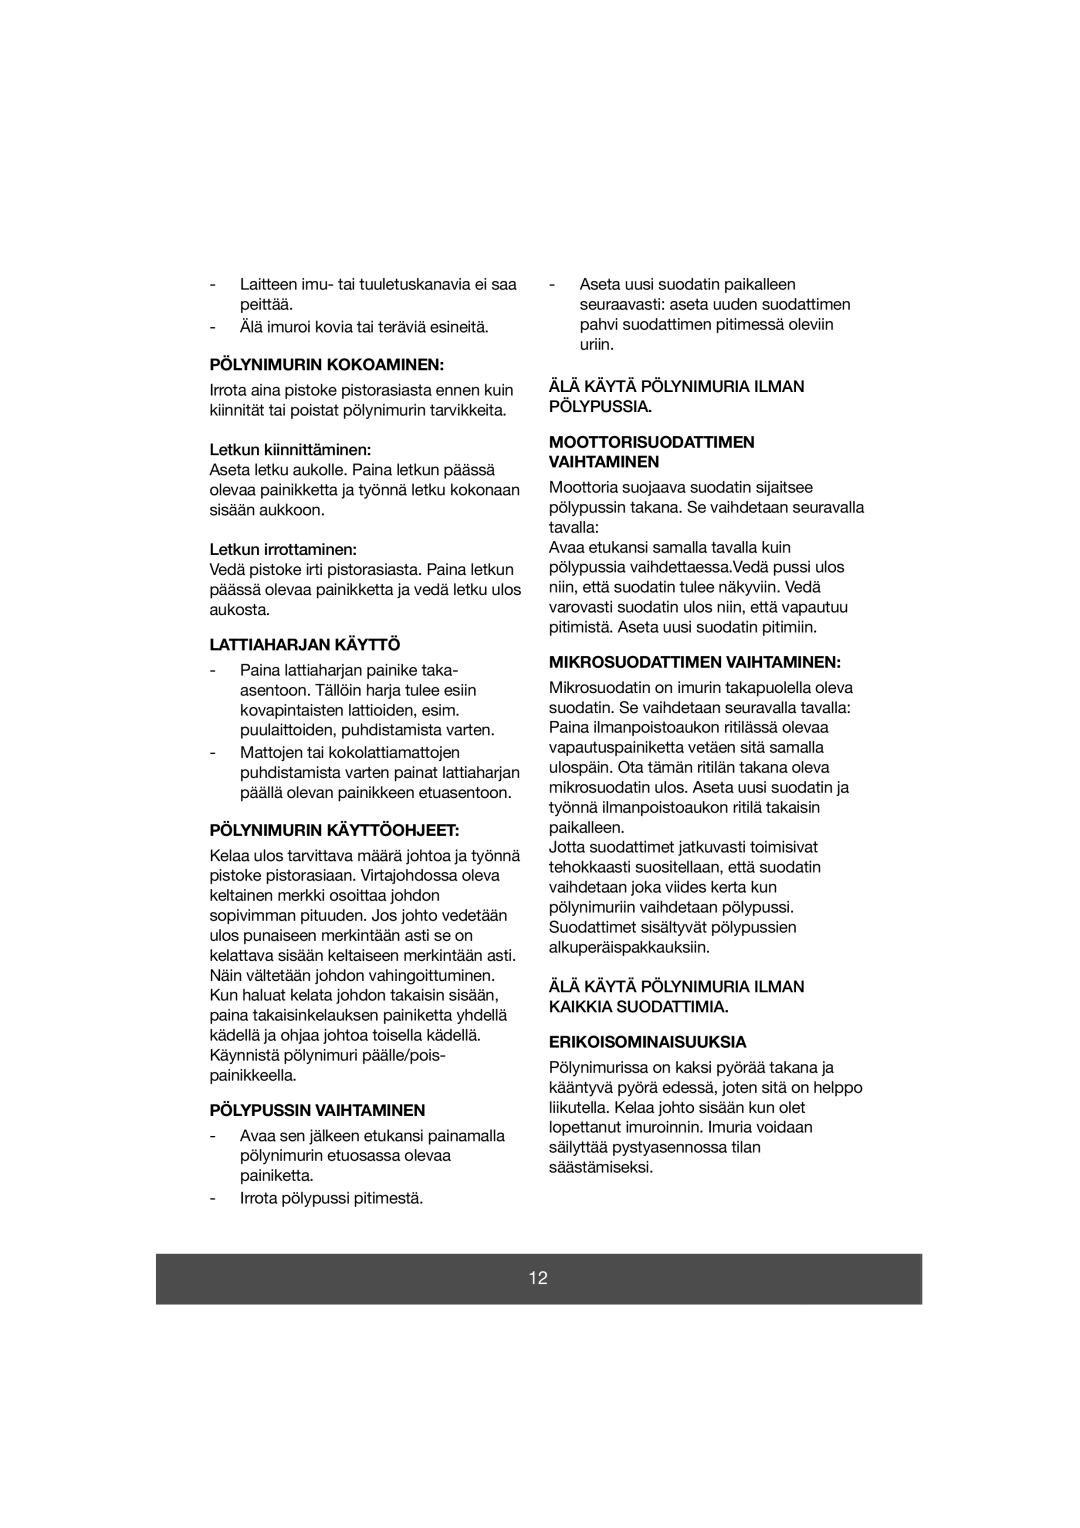 Melissa 640-038 manual Pölynimurin Kokoaminen, Lattiaharjan Käyttö, Pölynimurin Käyttöohjeet, Pölypussin Vaihtaminen 